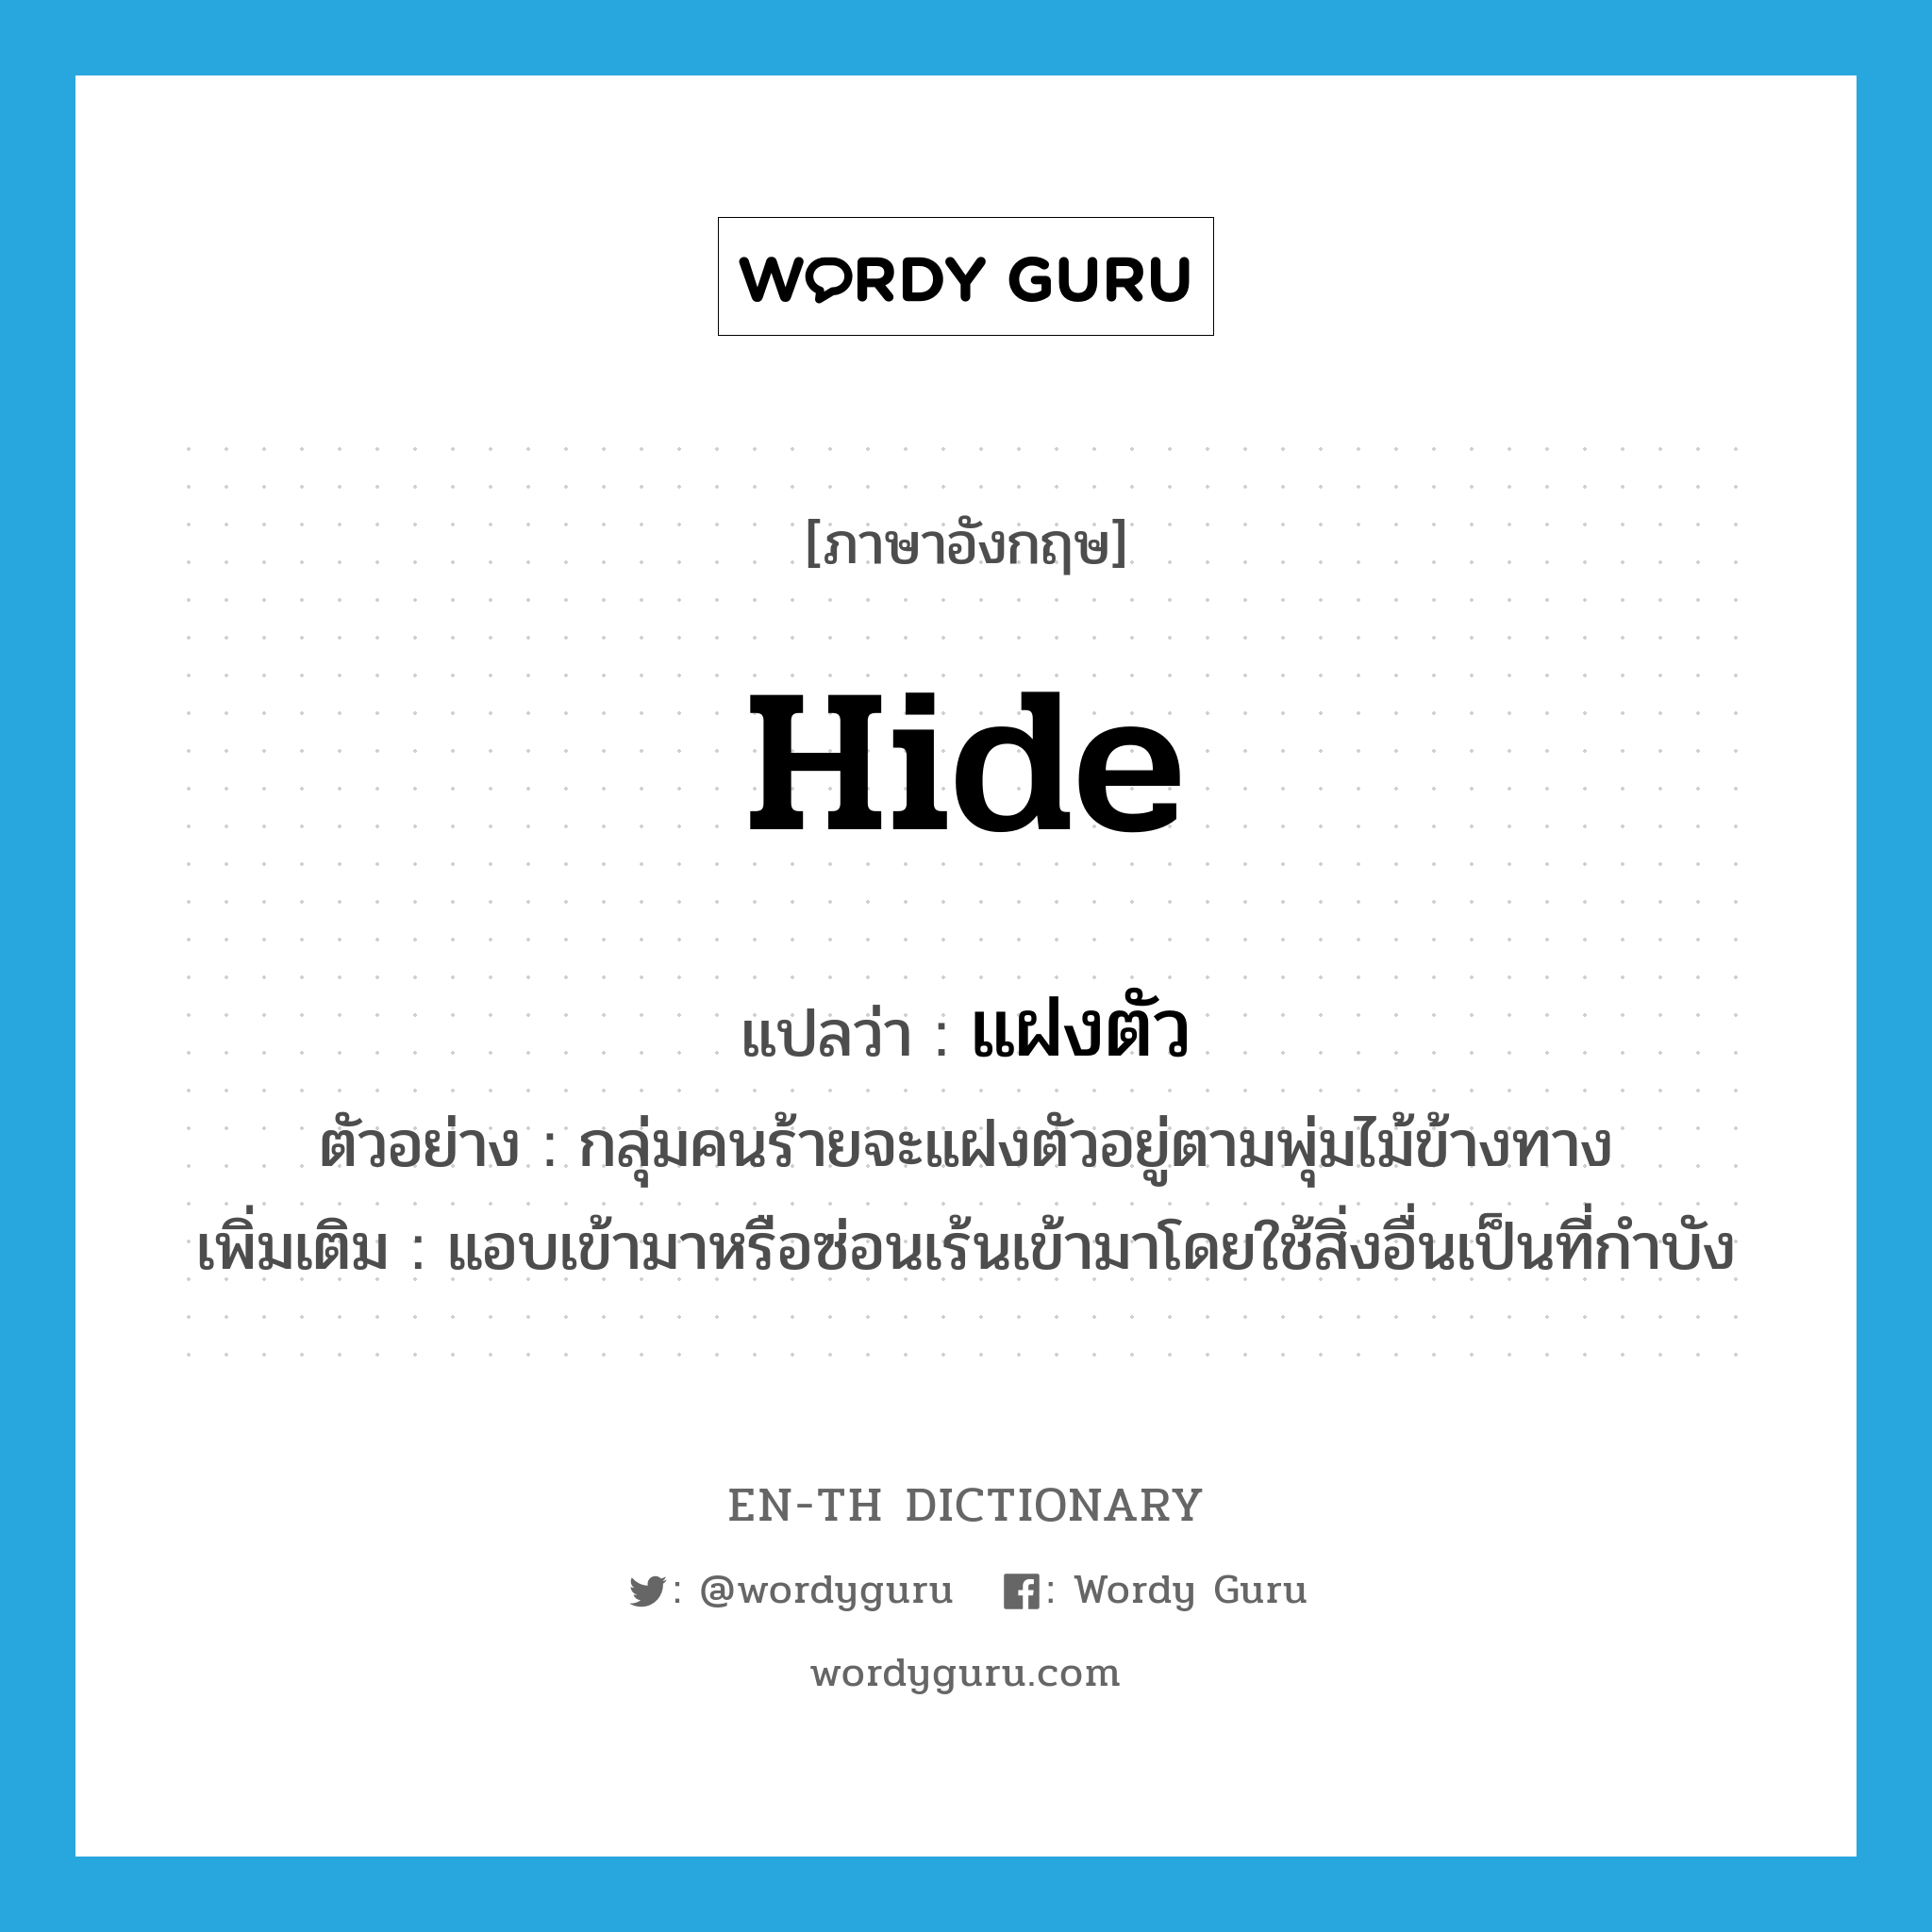 hide แปลว่า?, คำศัพท์ภาษาอังกฤษ hide แปลว่า แฝงตัว ประเภท V ตัวอย่าง กลุ่มคนร้ายจะแฝงตัวอยู่ตามพุ่มไม้ข้างทาง เพิ่มเติม แอบเข้ามาหรือซ่อนเร้นเข้ามาโดยใช้สิ่งอื่นเป็นที่กำบัง หมวด V